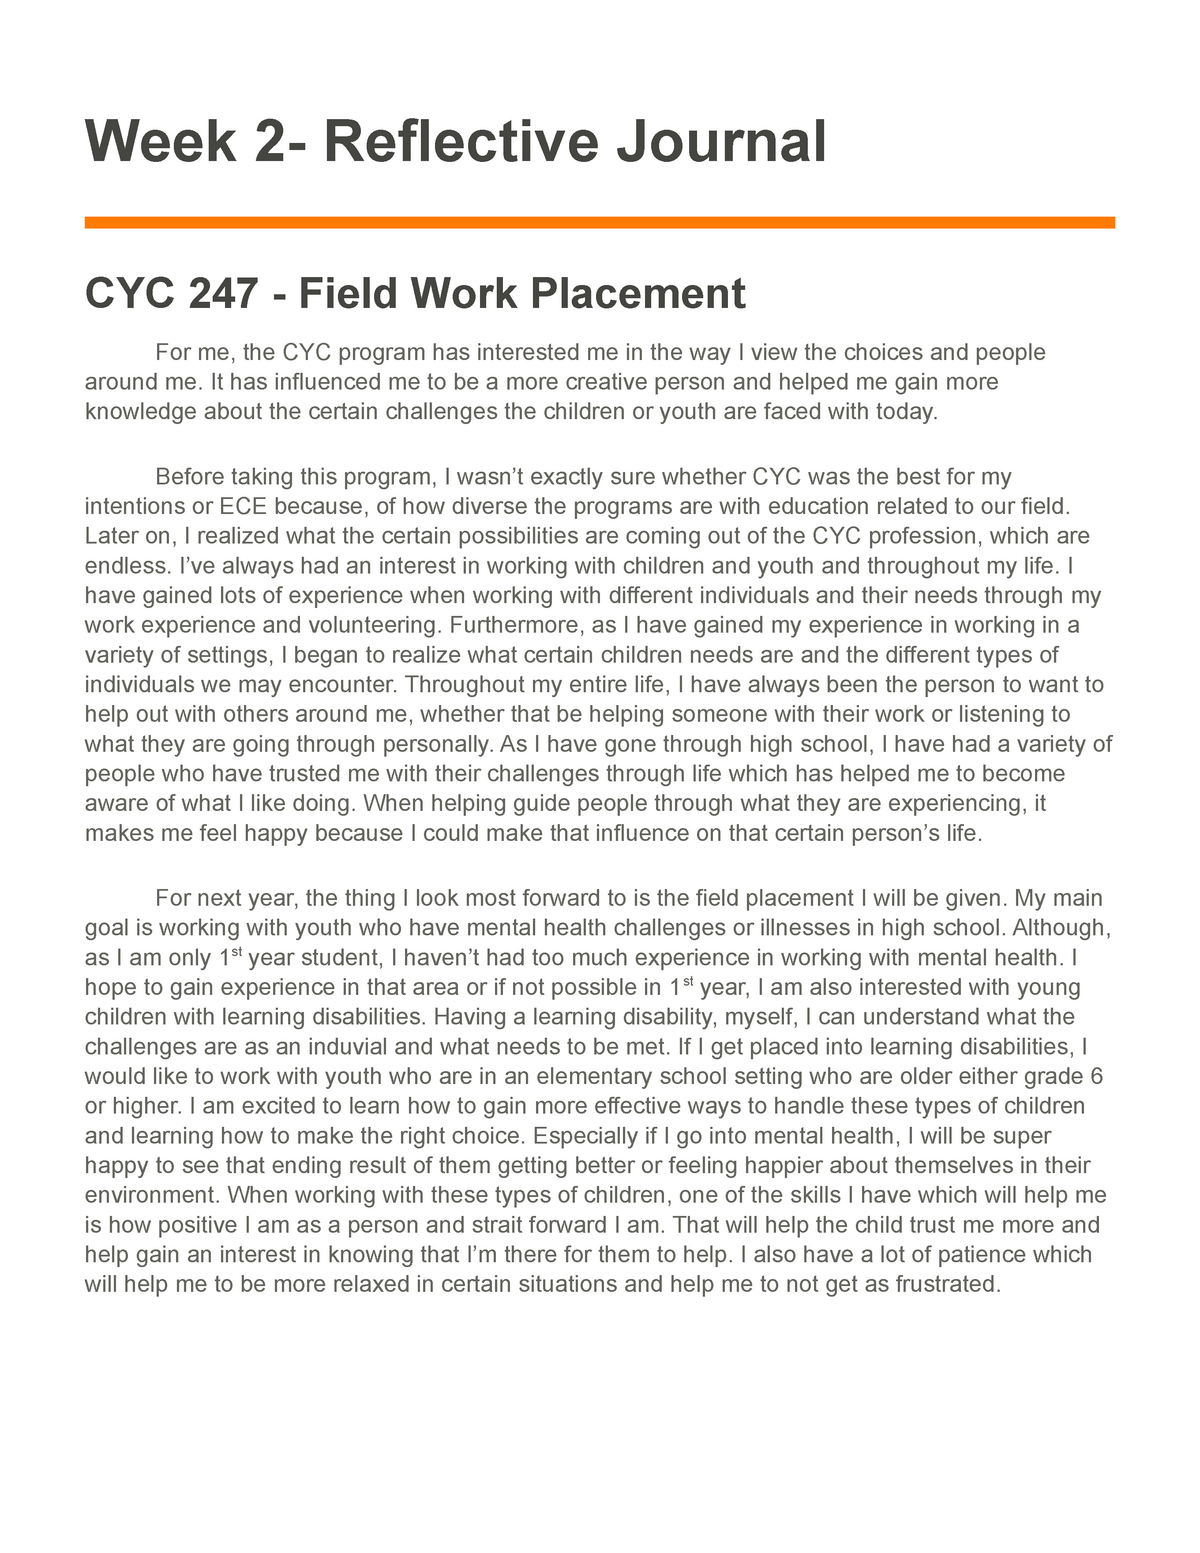 Week 2 Assignment - Reflective Journal - Week 2- Reflective Journal CYC ...